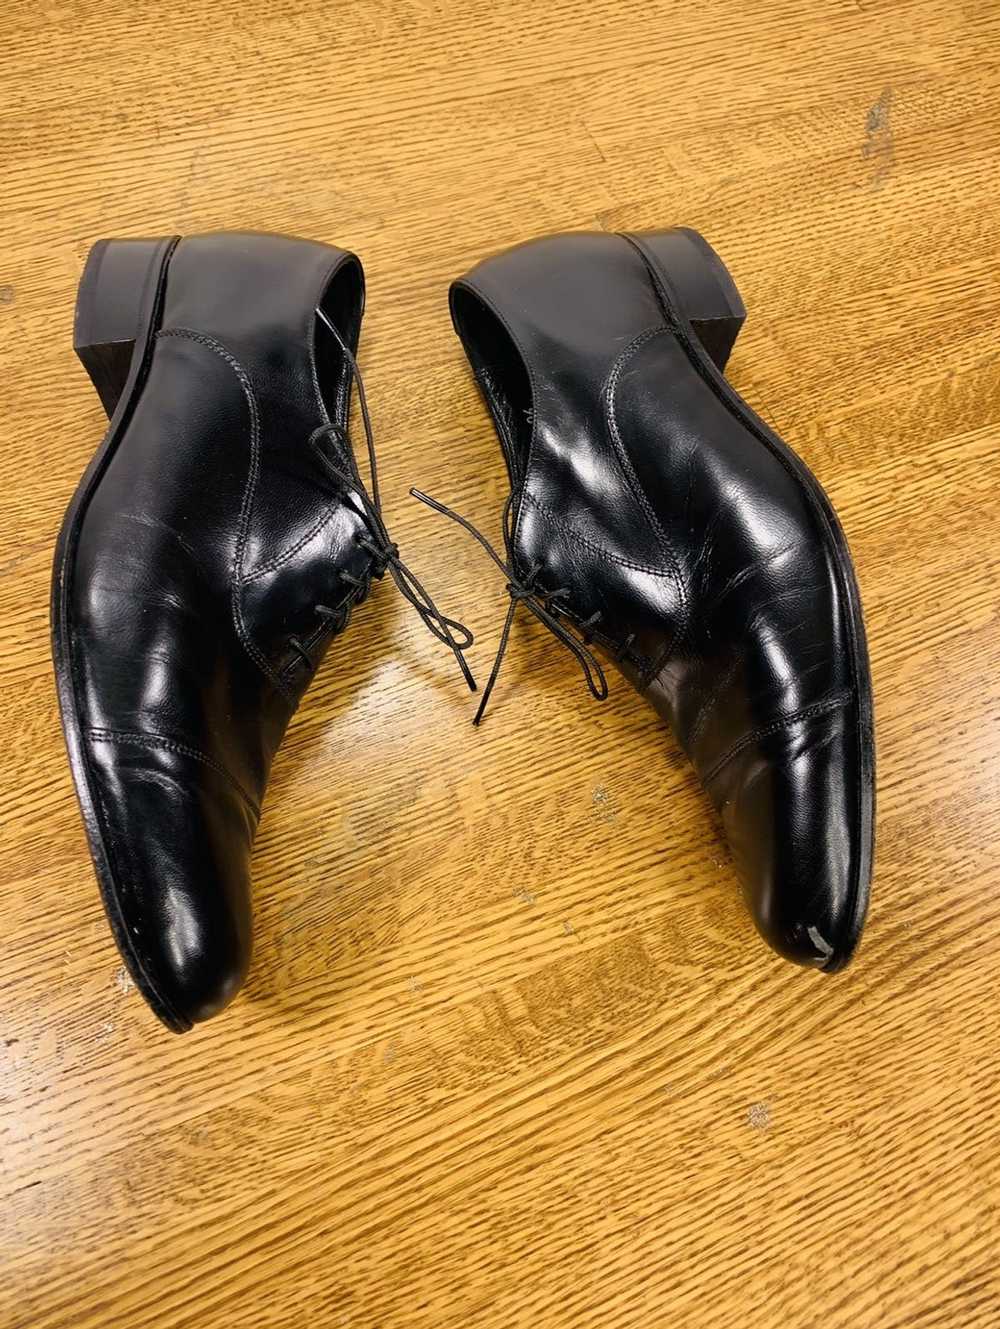 Florsheim Florsheim Men’s Oxfords Dress Shoes - image 5